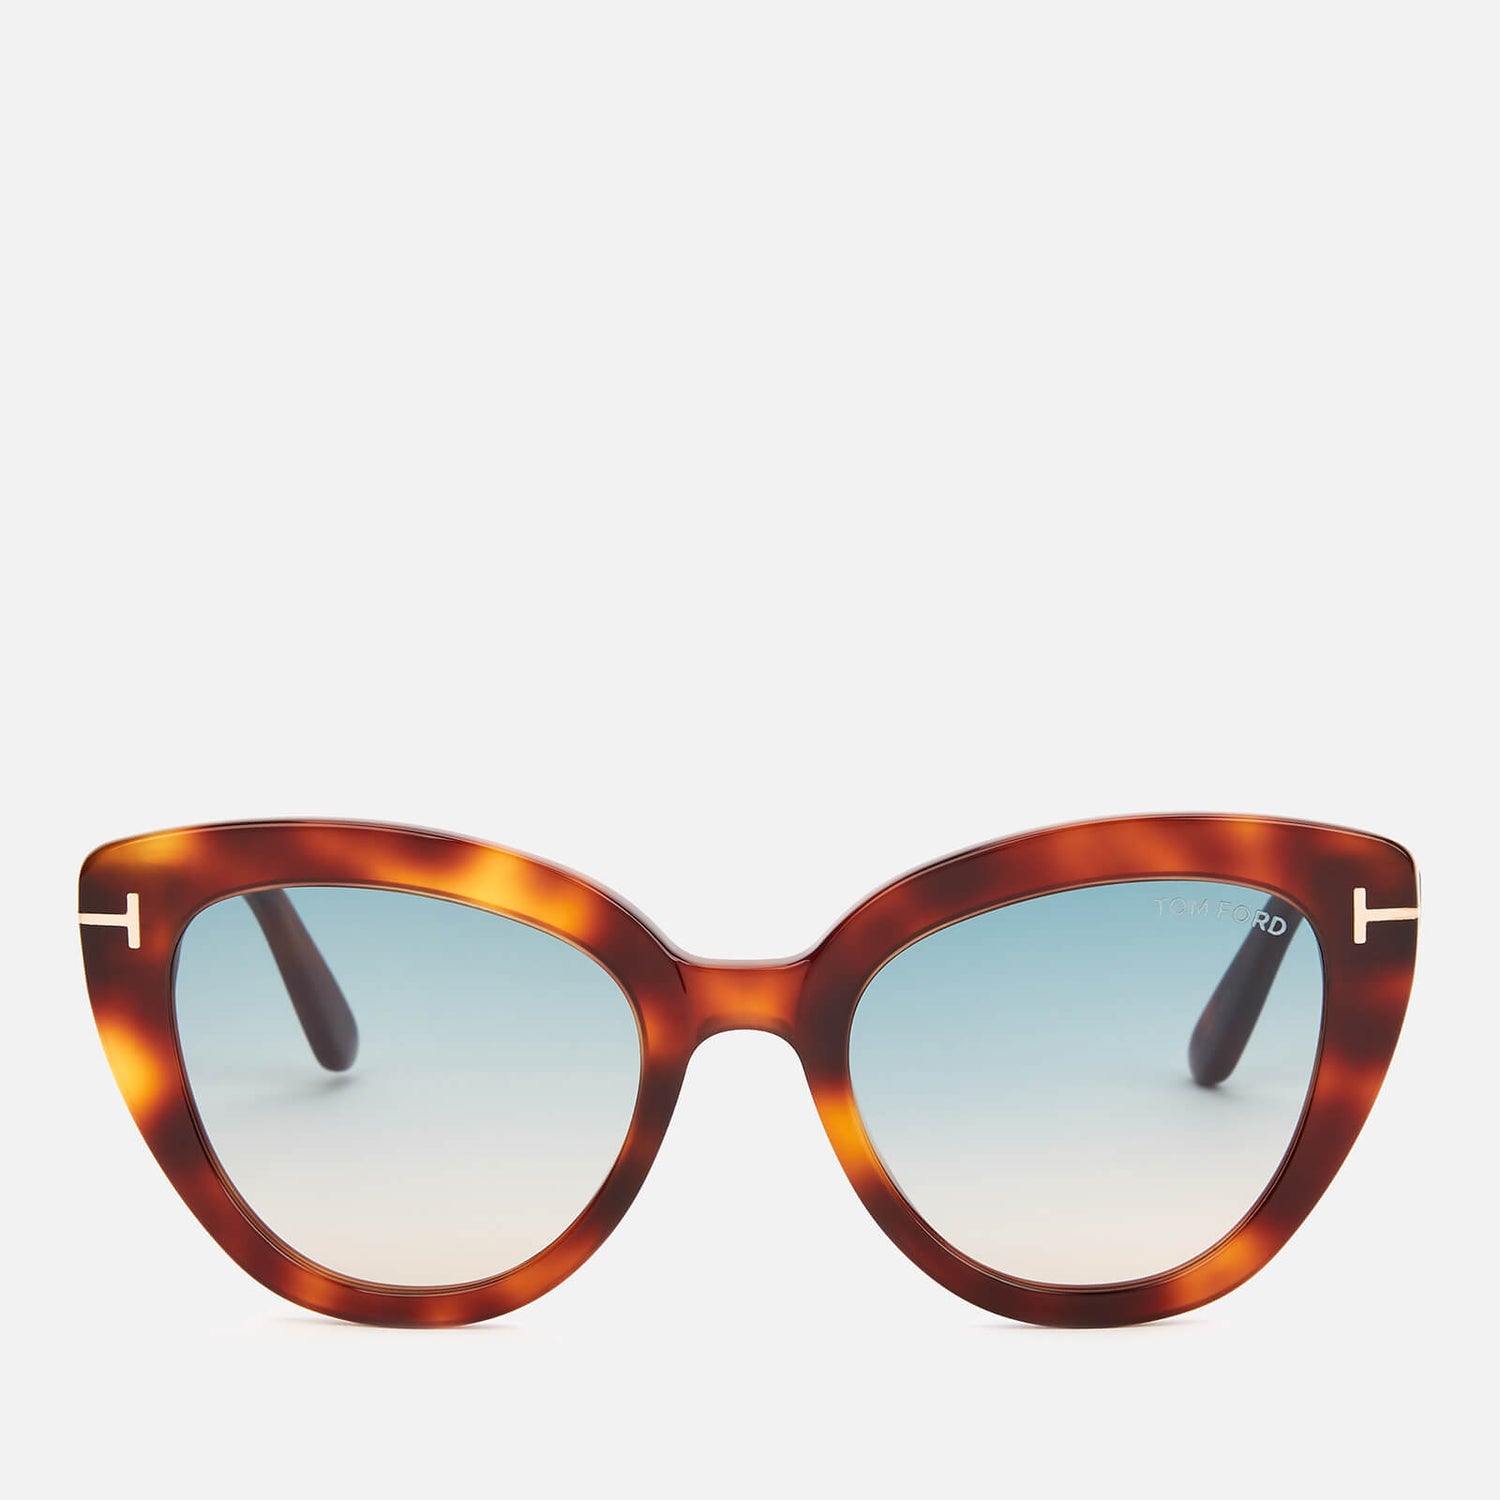 Tom Ford Women's Izzi Cat Frame Sunglasses - Blonde Havana